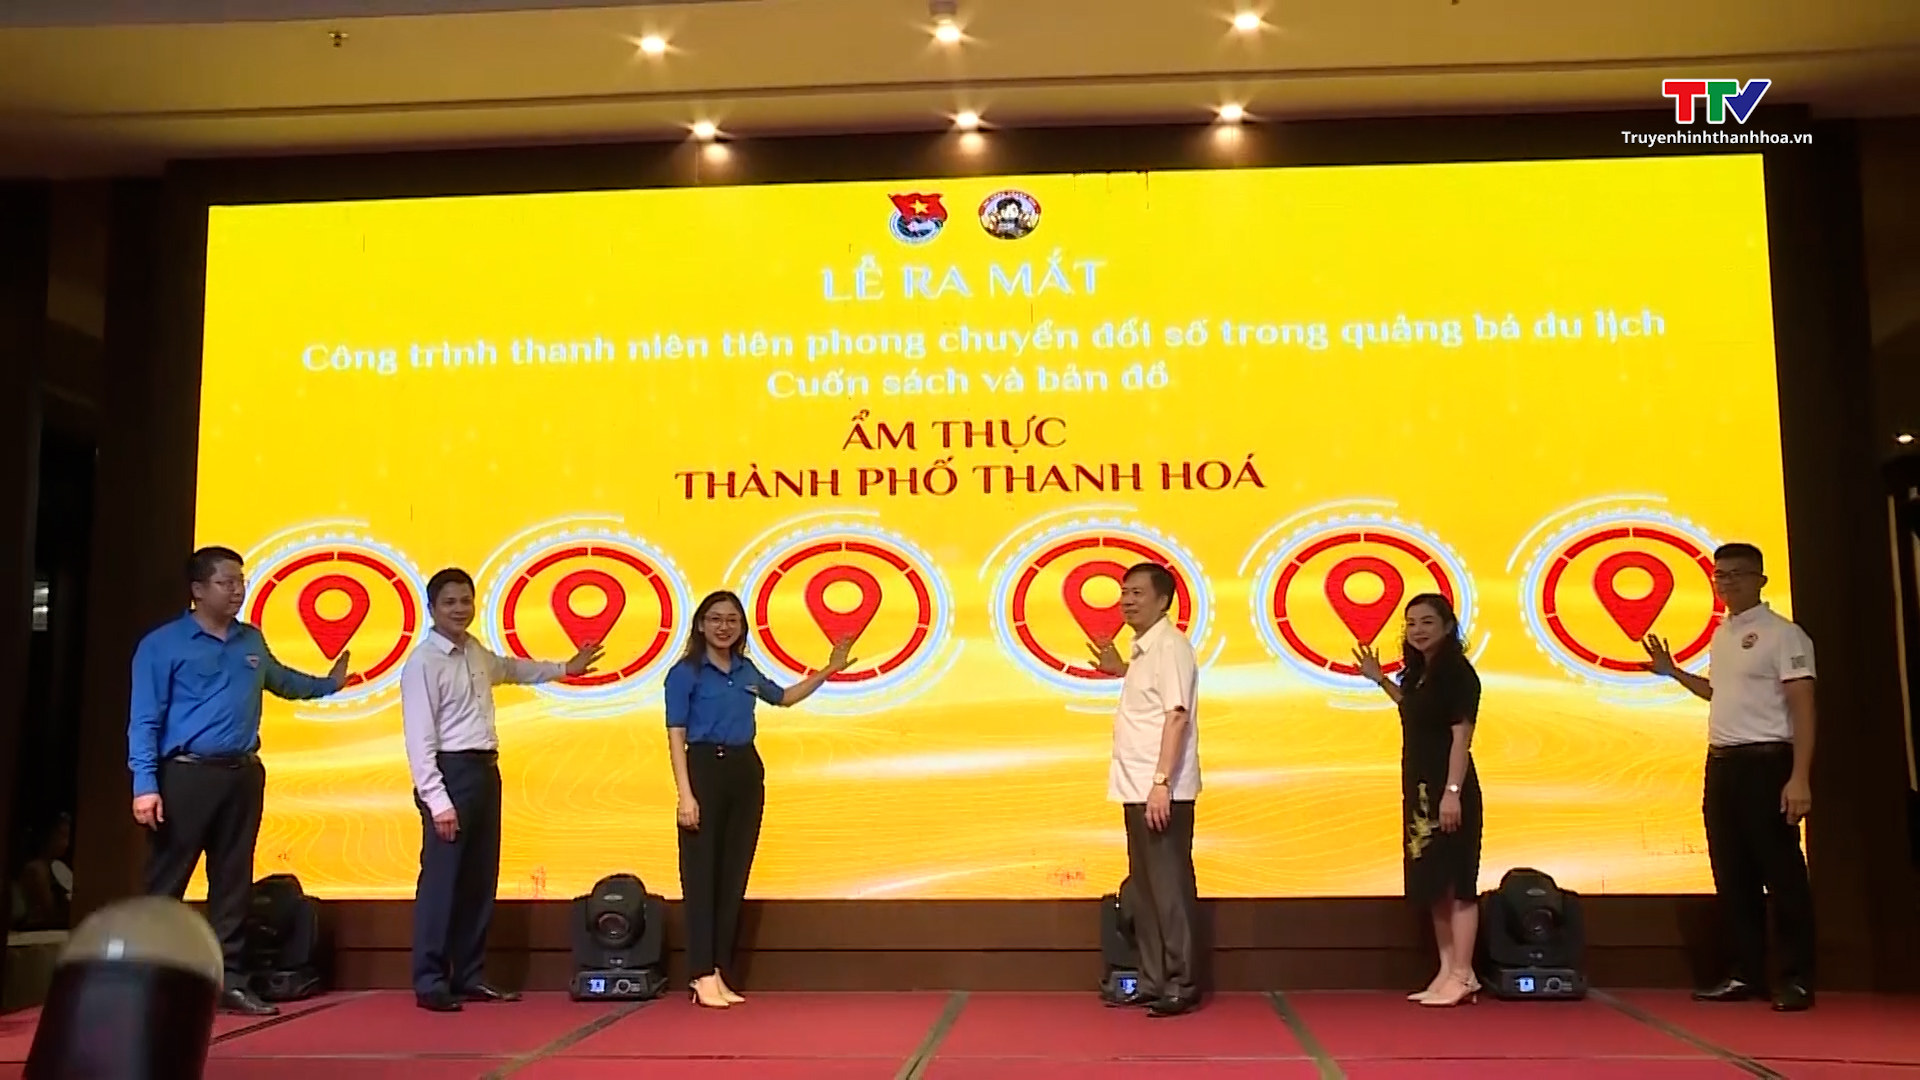 Bản đồ ẩm thực thành phố Thanh Hoá - công trình thanh niên tiên phong chuyển đổi số trong quảng bá du lịch - Ảnh 2.